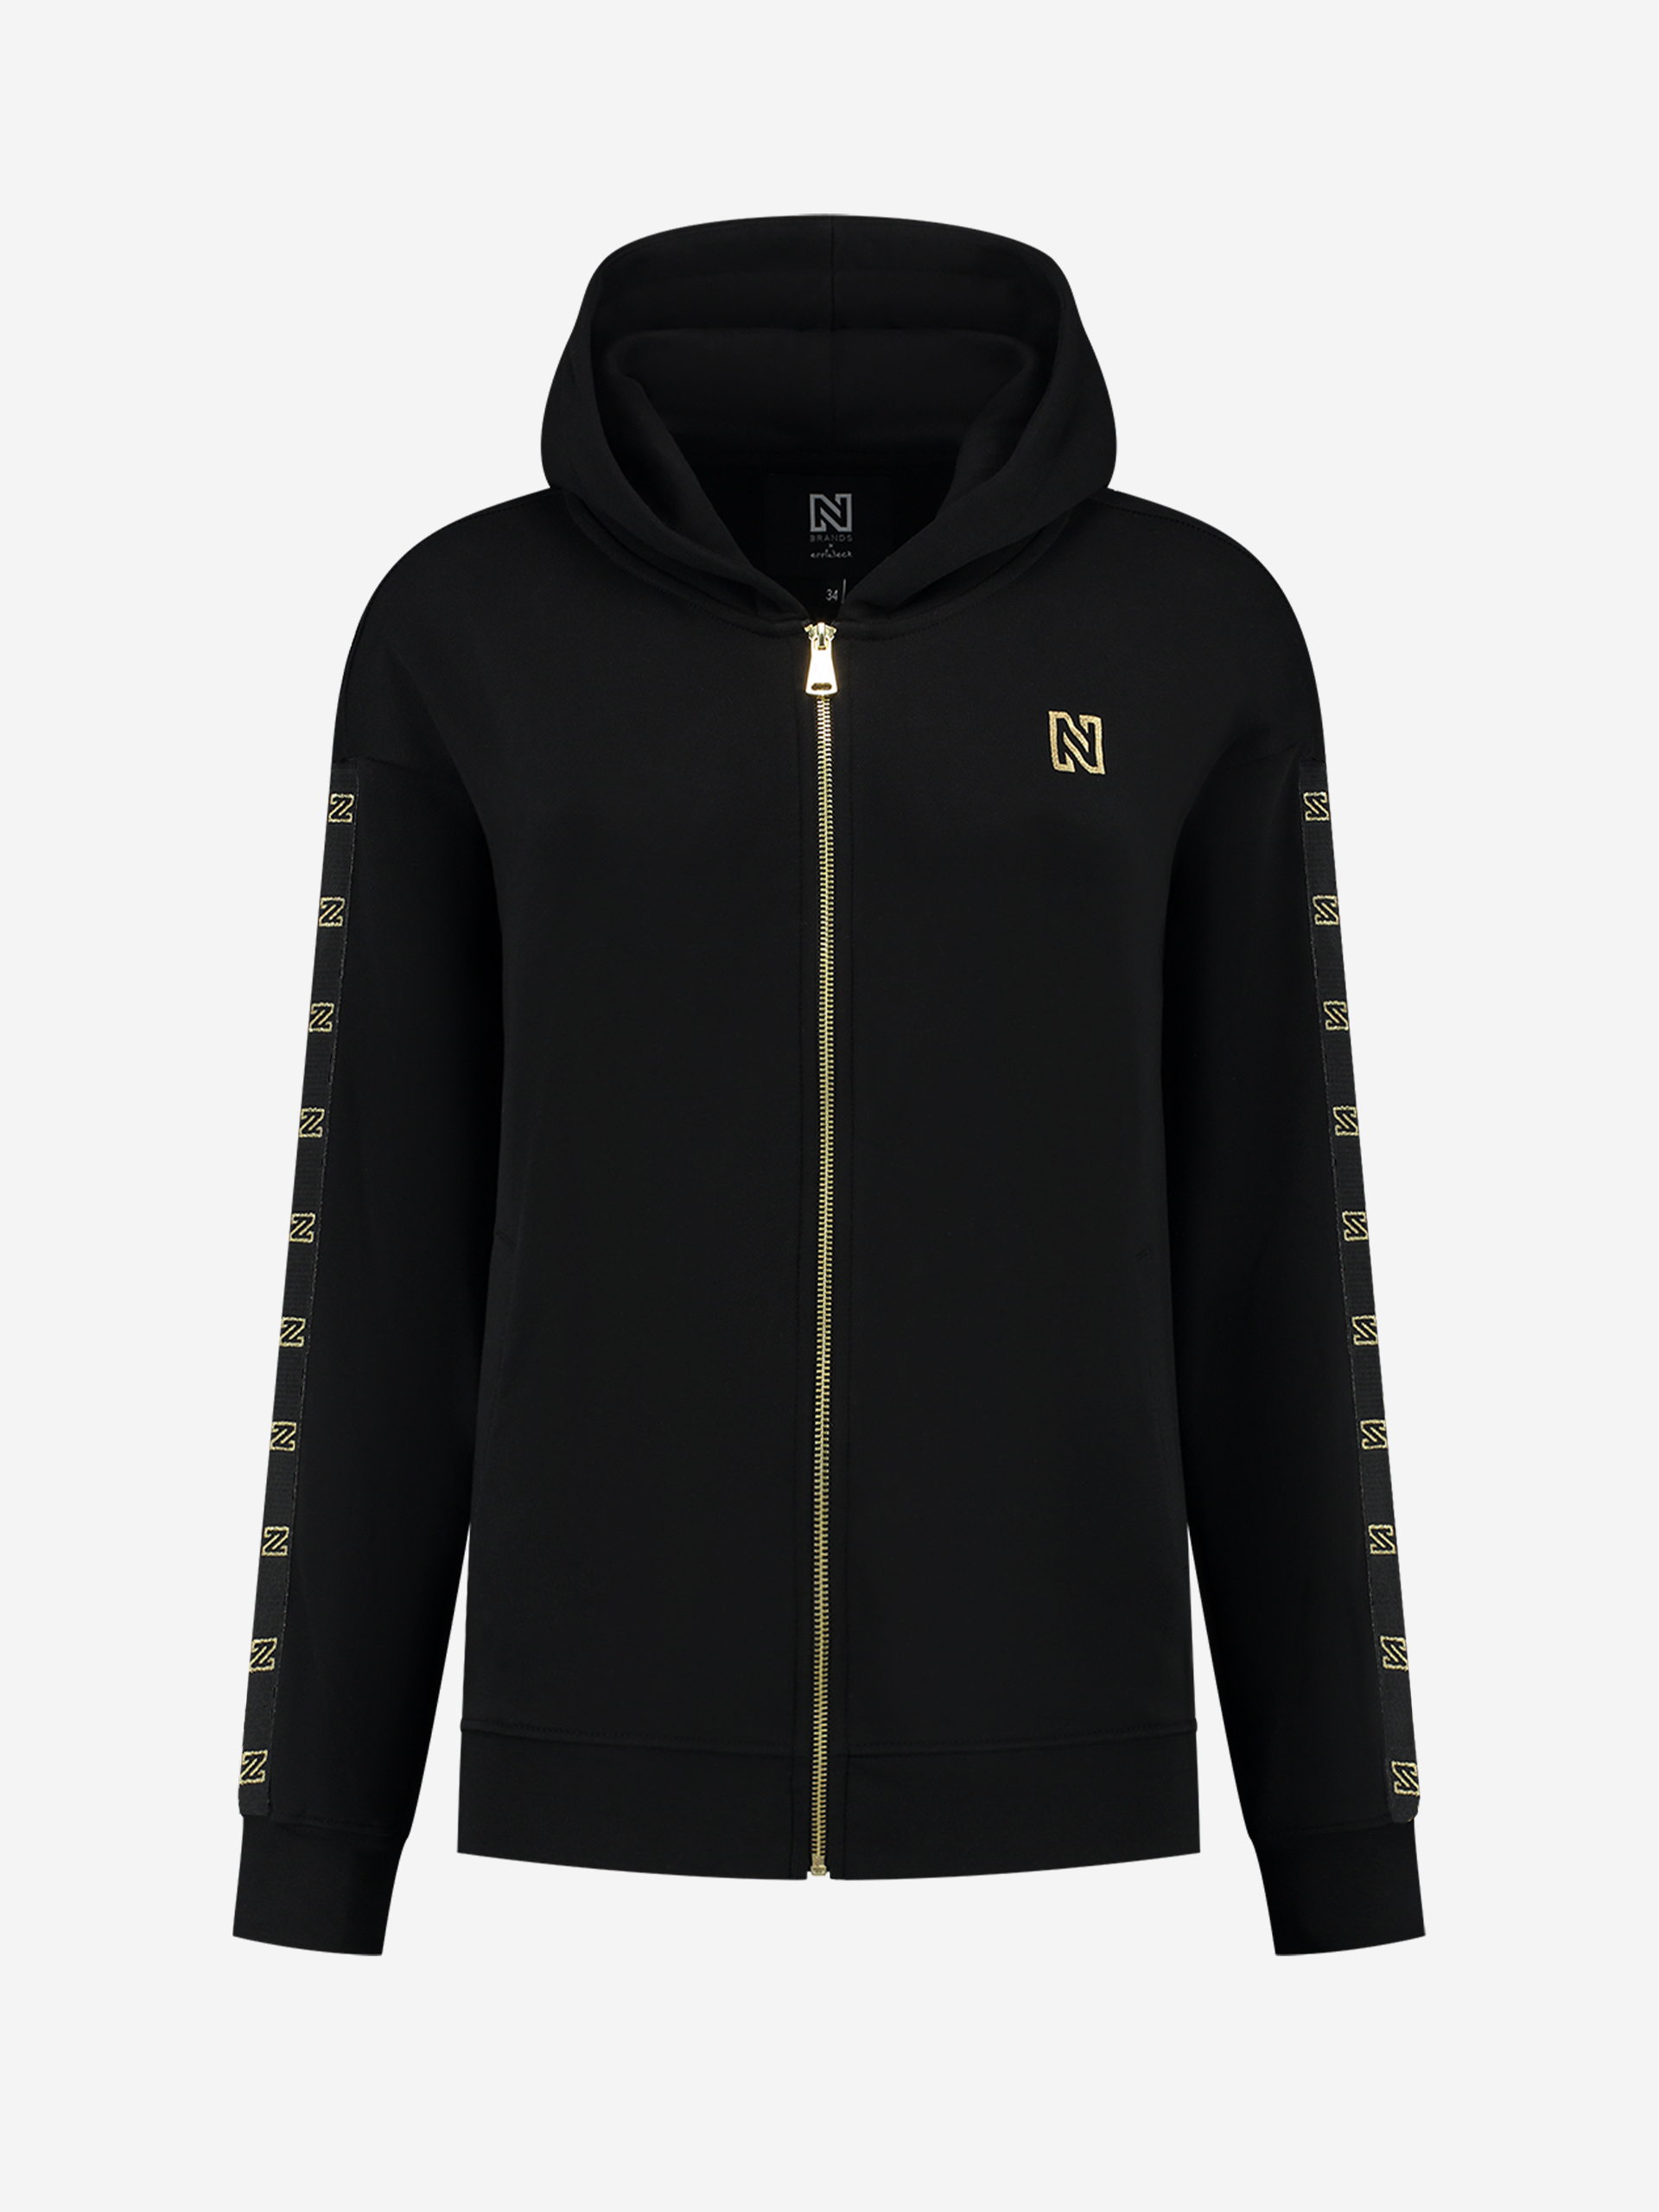 Zip hoodie with foil N logo 